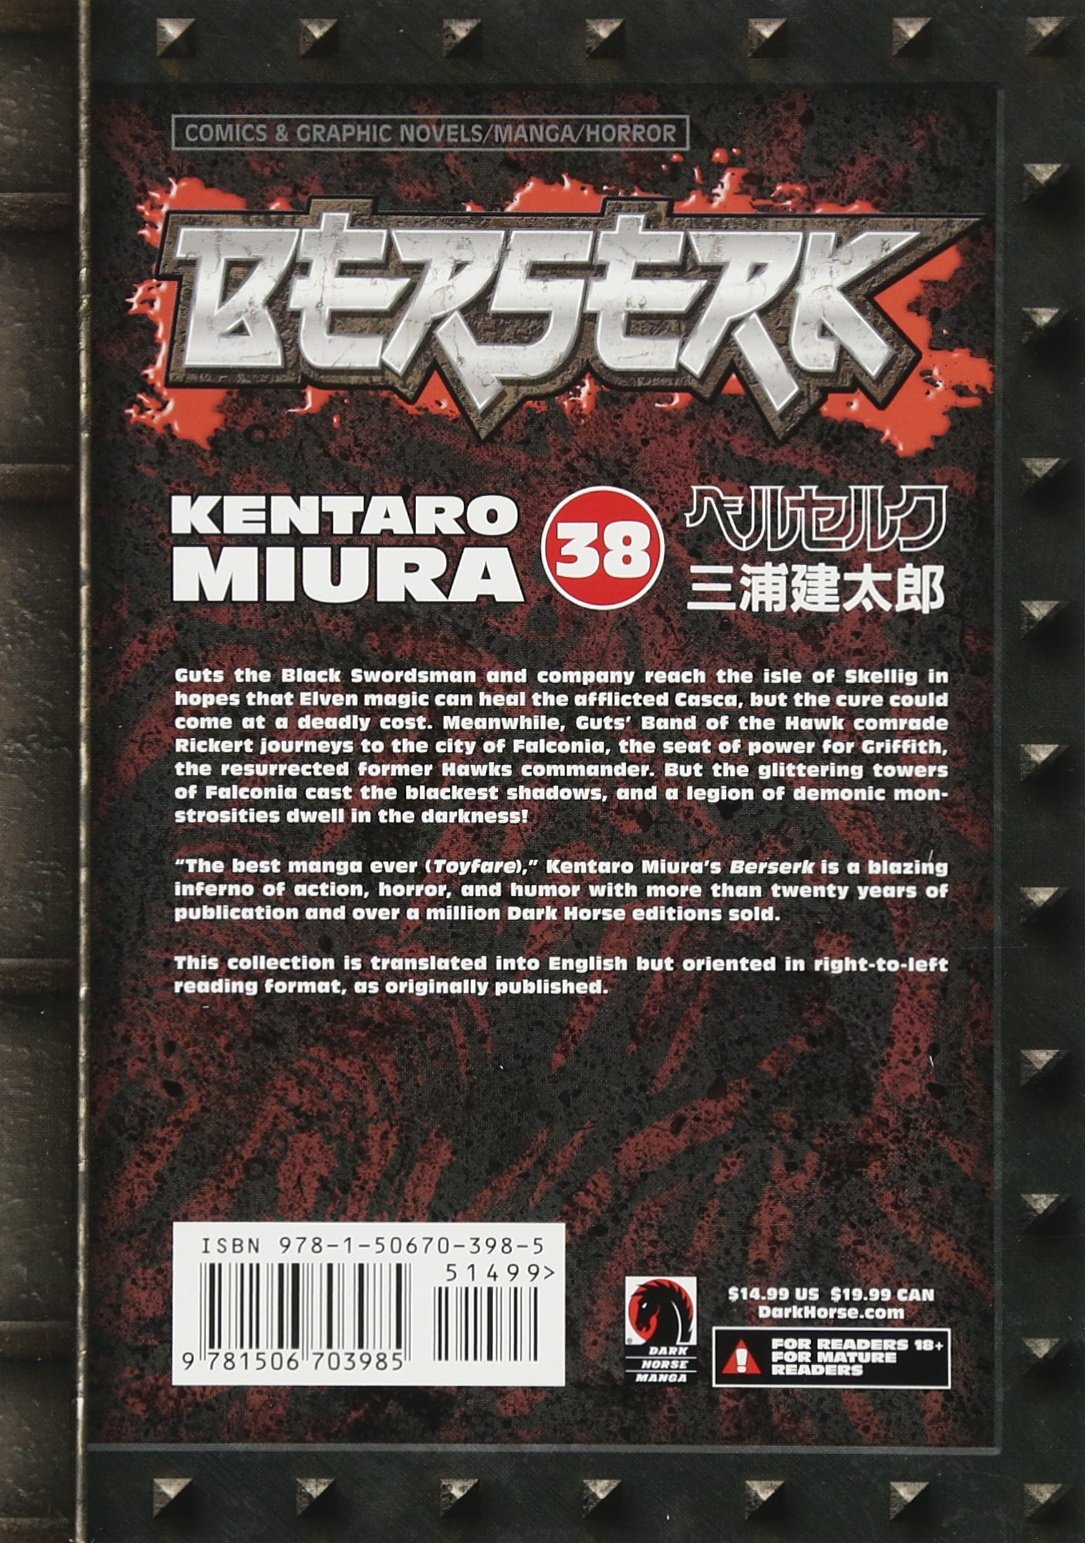 Berserk Volume 38